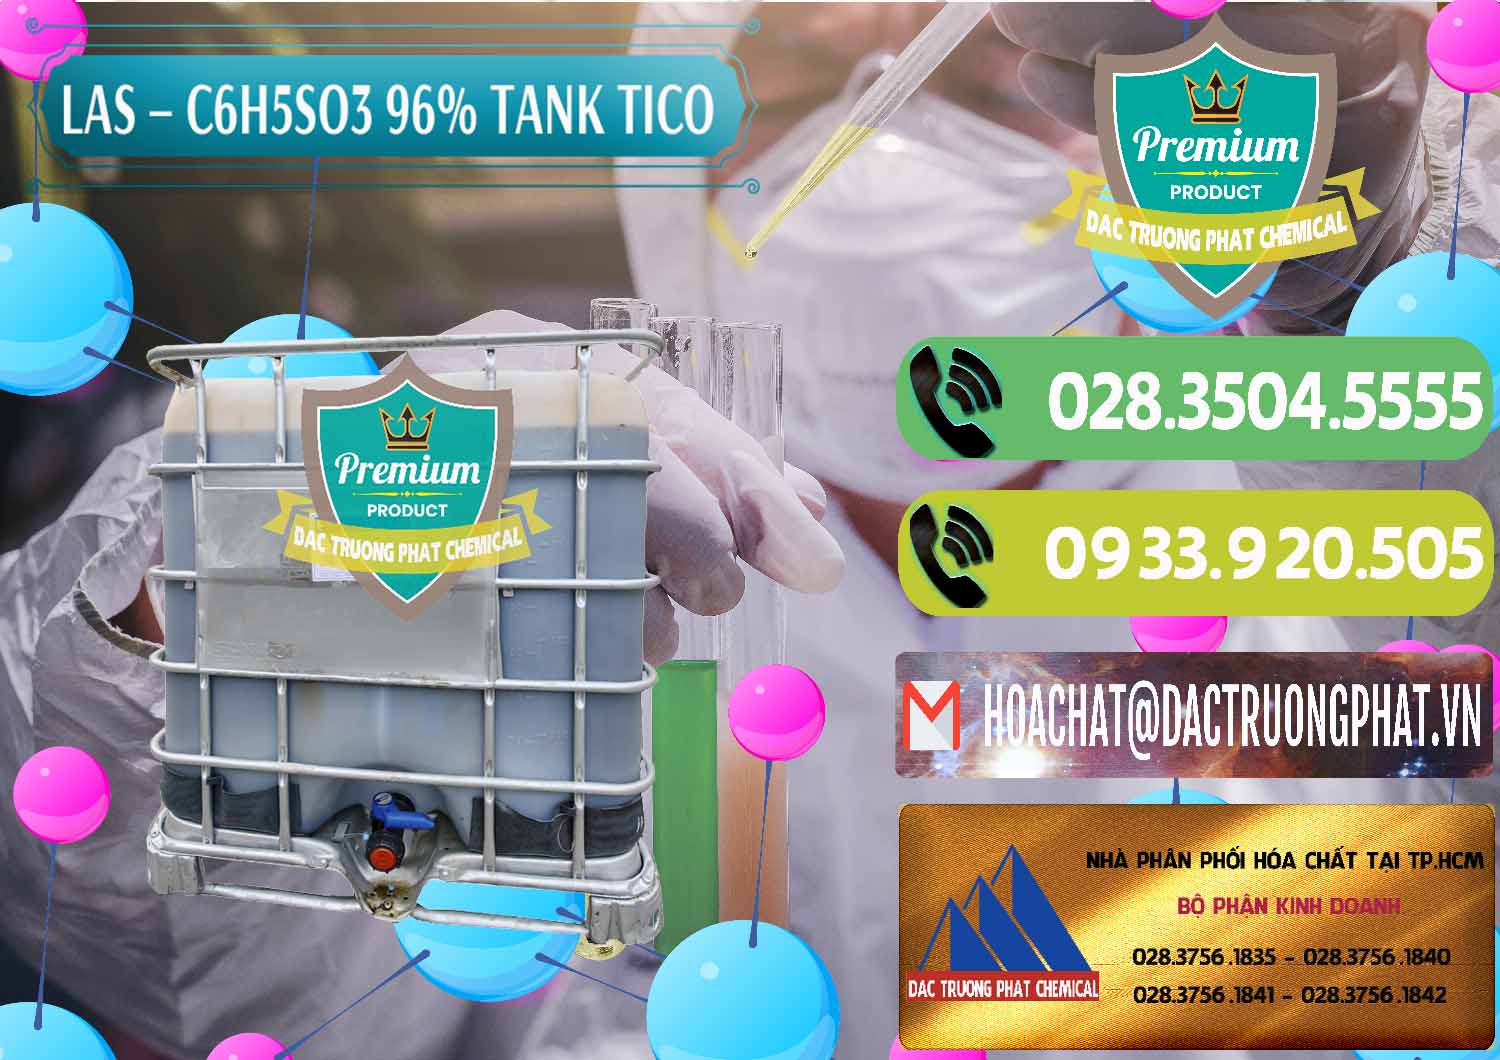 Cty kinh doanh & bán Chất tạo bọt Las P Tico Tank IBC Bồn Việt Nam - 0488 - Công ty bán và cung cấp hóa chất tại TP.HCM - hoachatmientay.vn